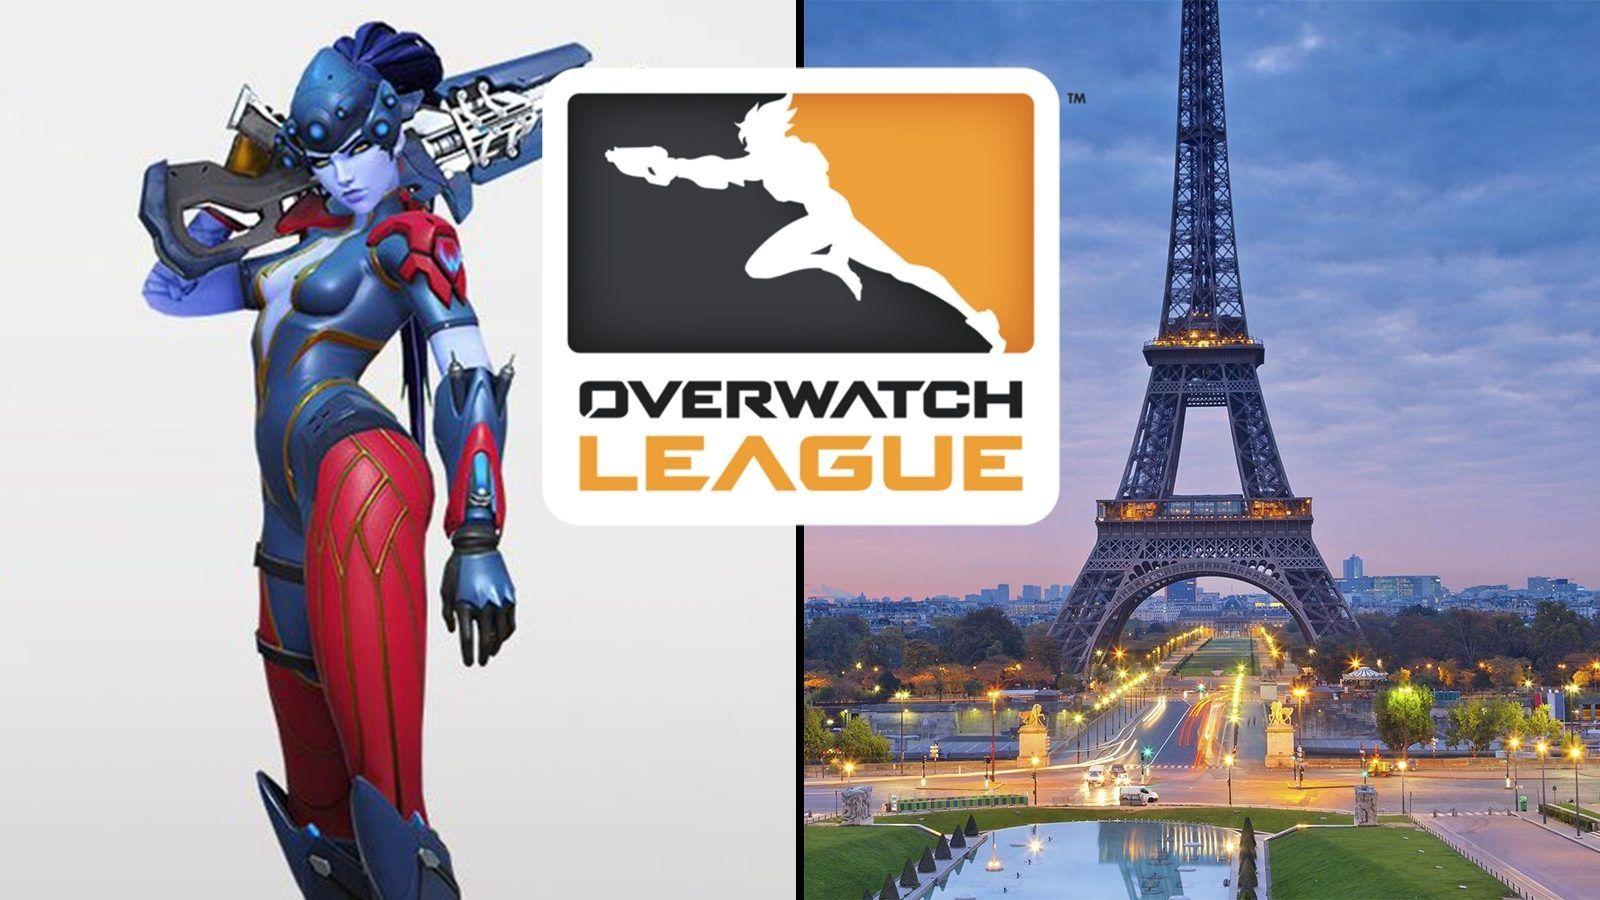 Paris Team Logo - Paris Overwatch League team reveals official logo and branding